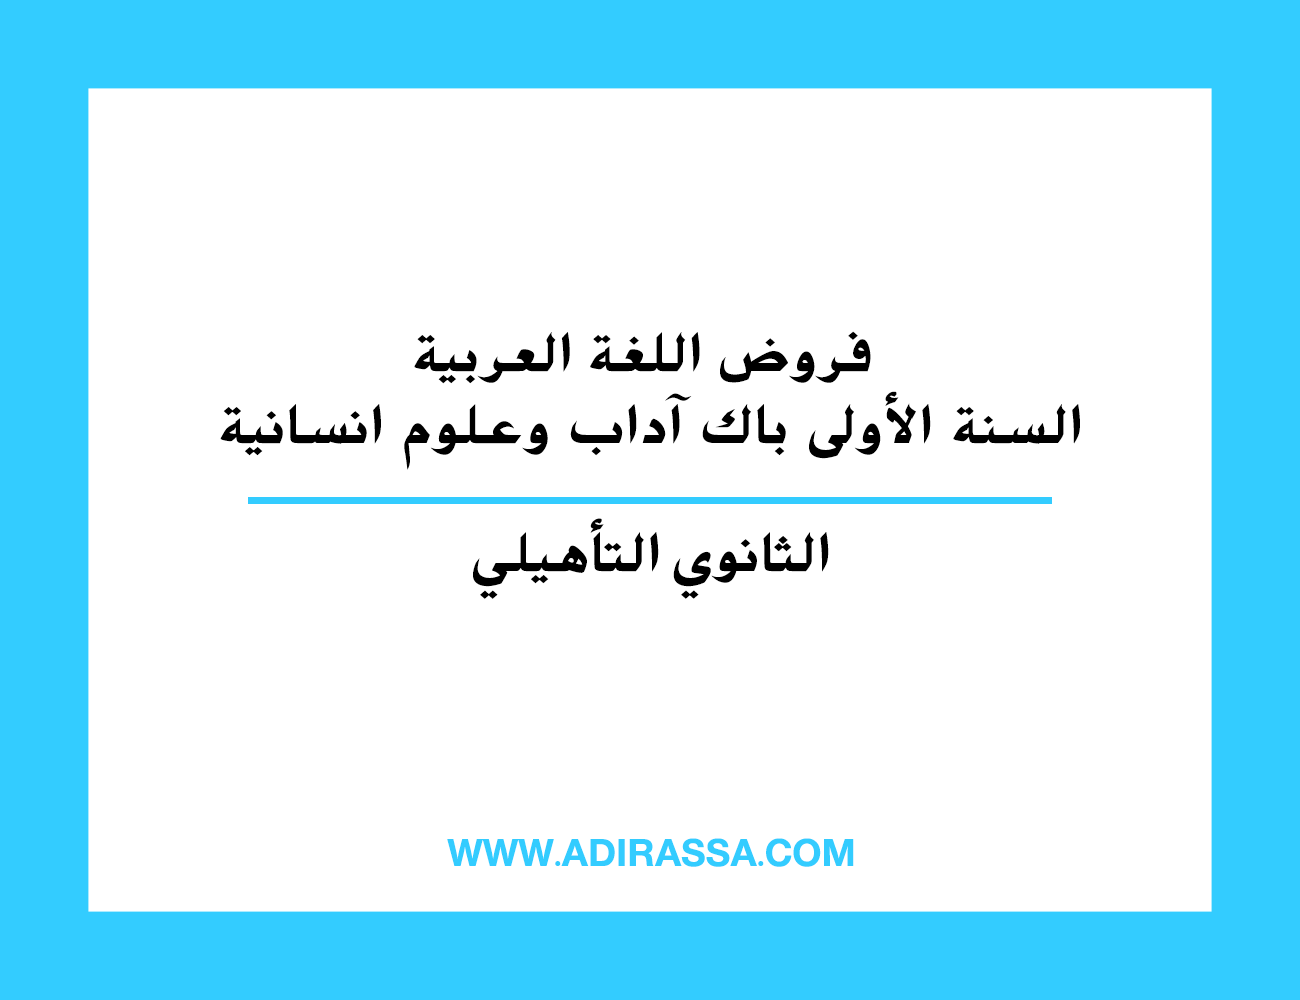 فروض اللغة العربية السنة الأولى باك آداب وعلوم انسانية بالثانوي التأهيلي